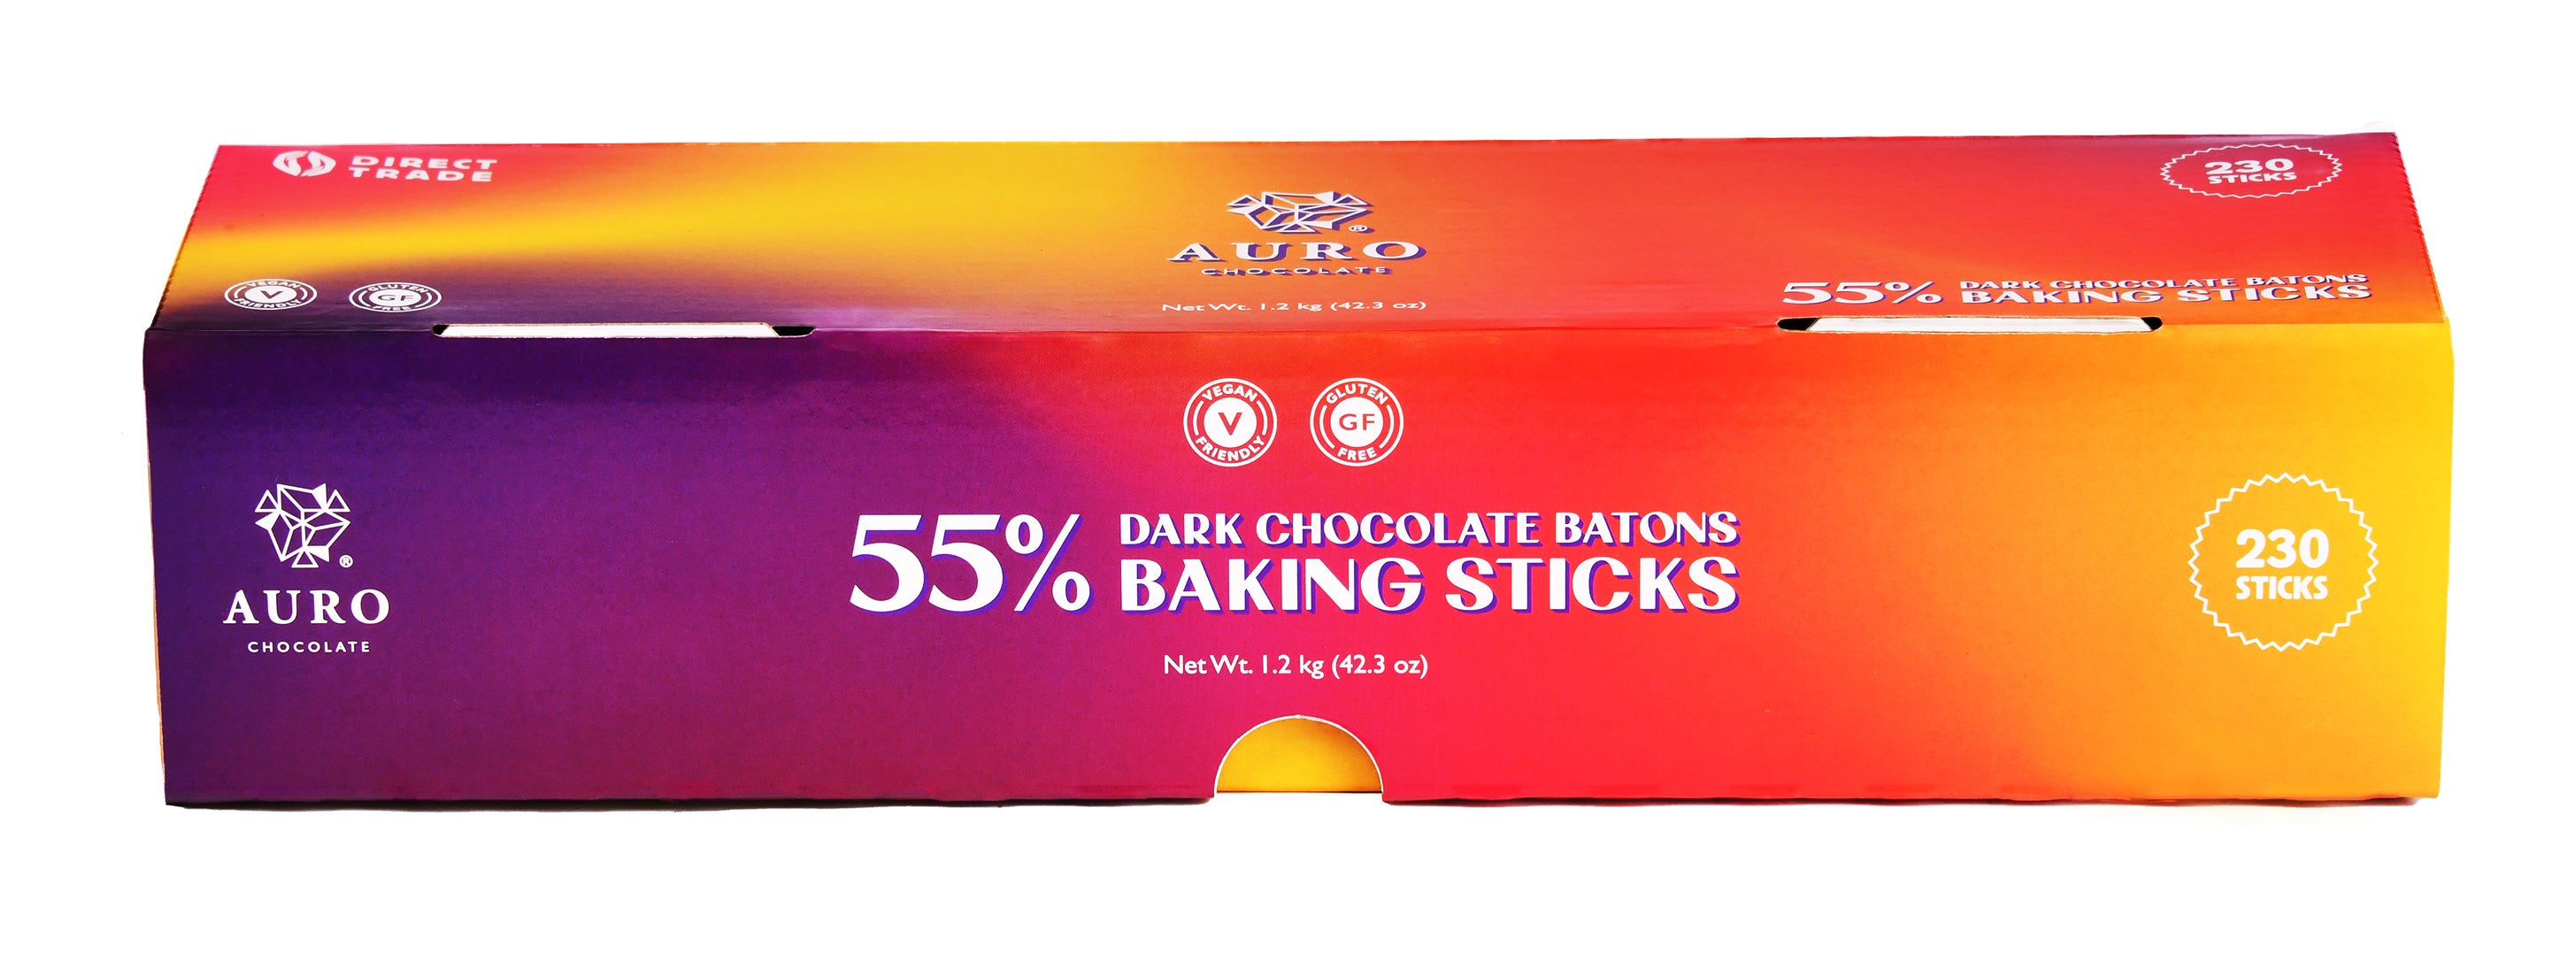 55% Dark Chocolate Batons Baking Sticks